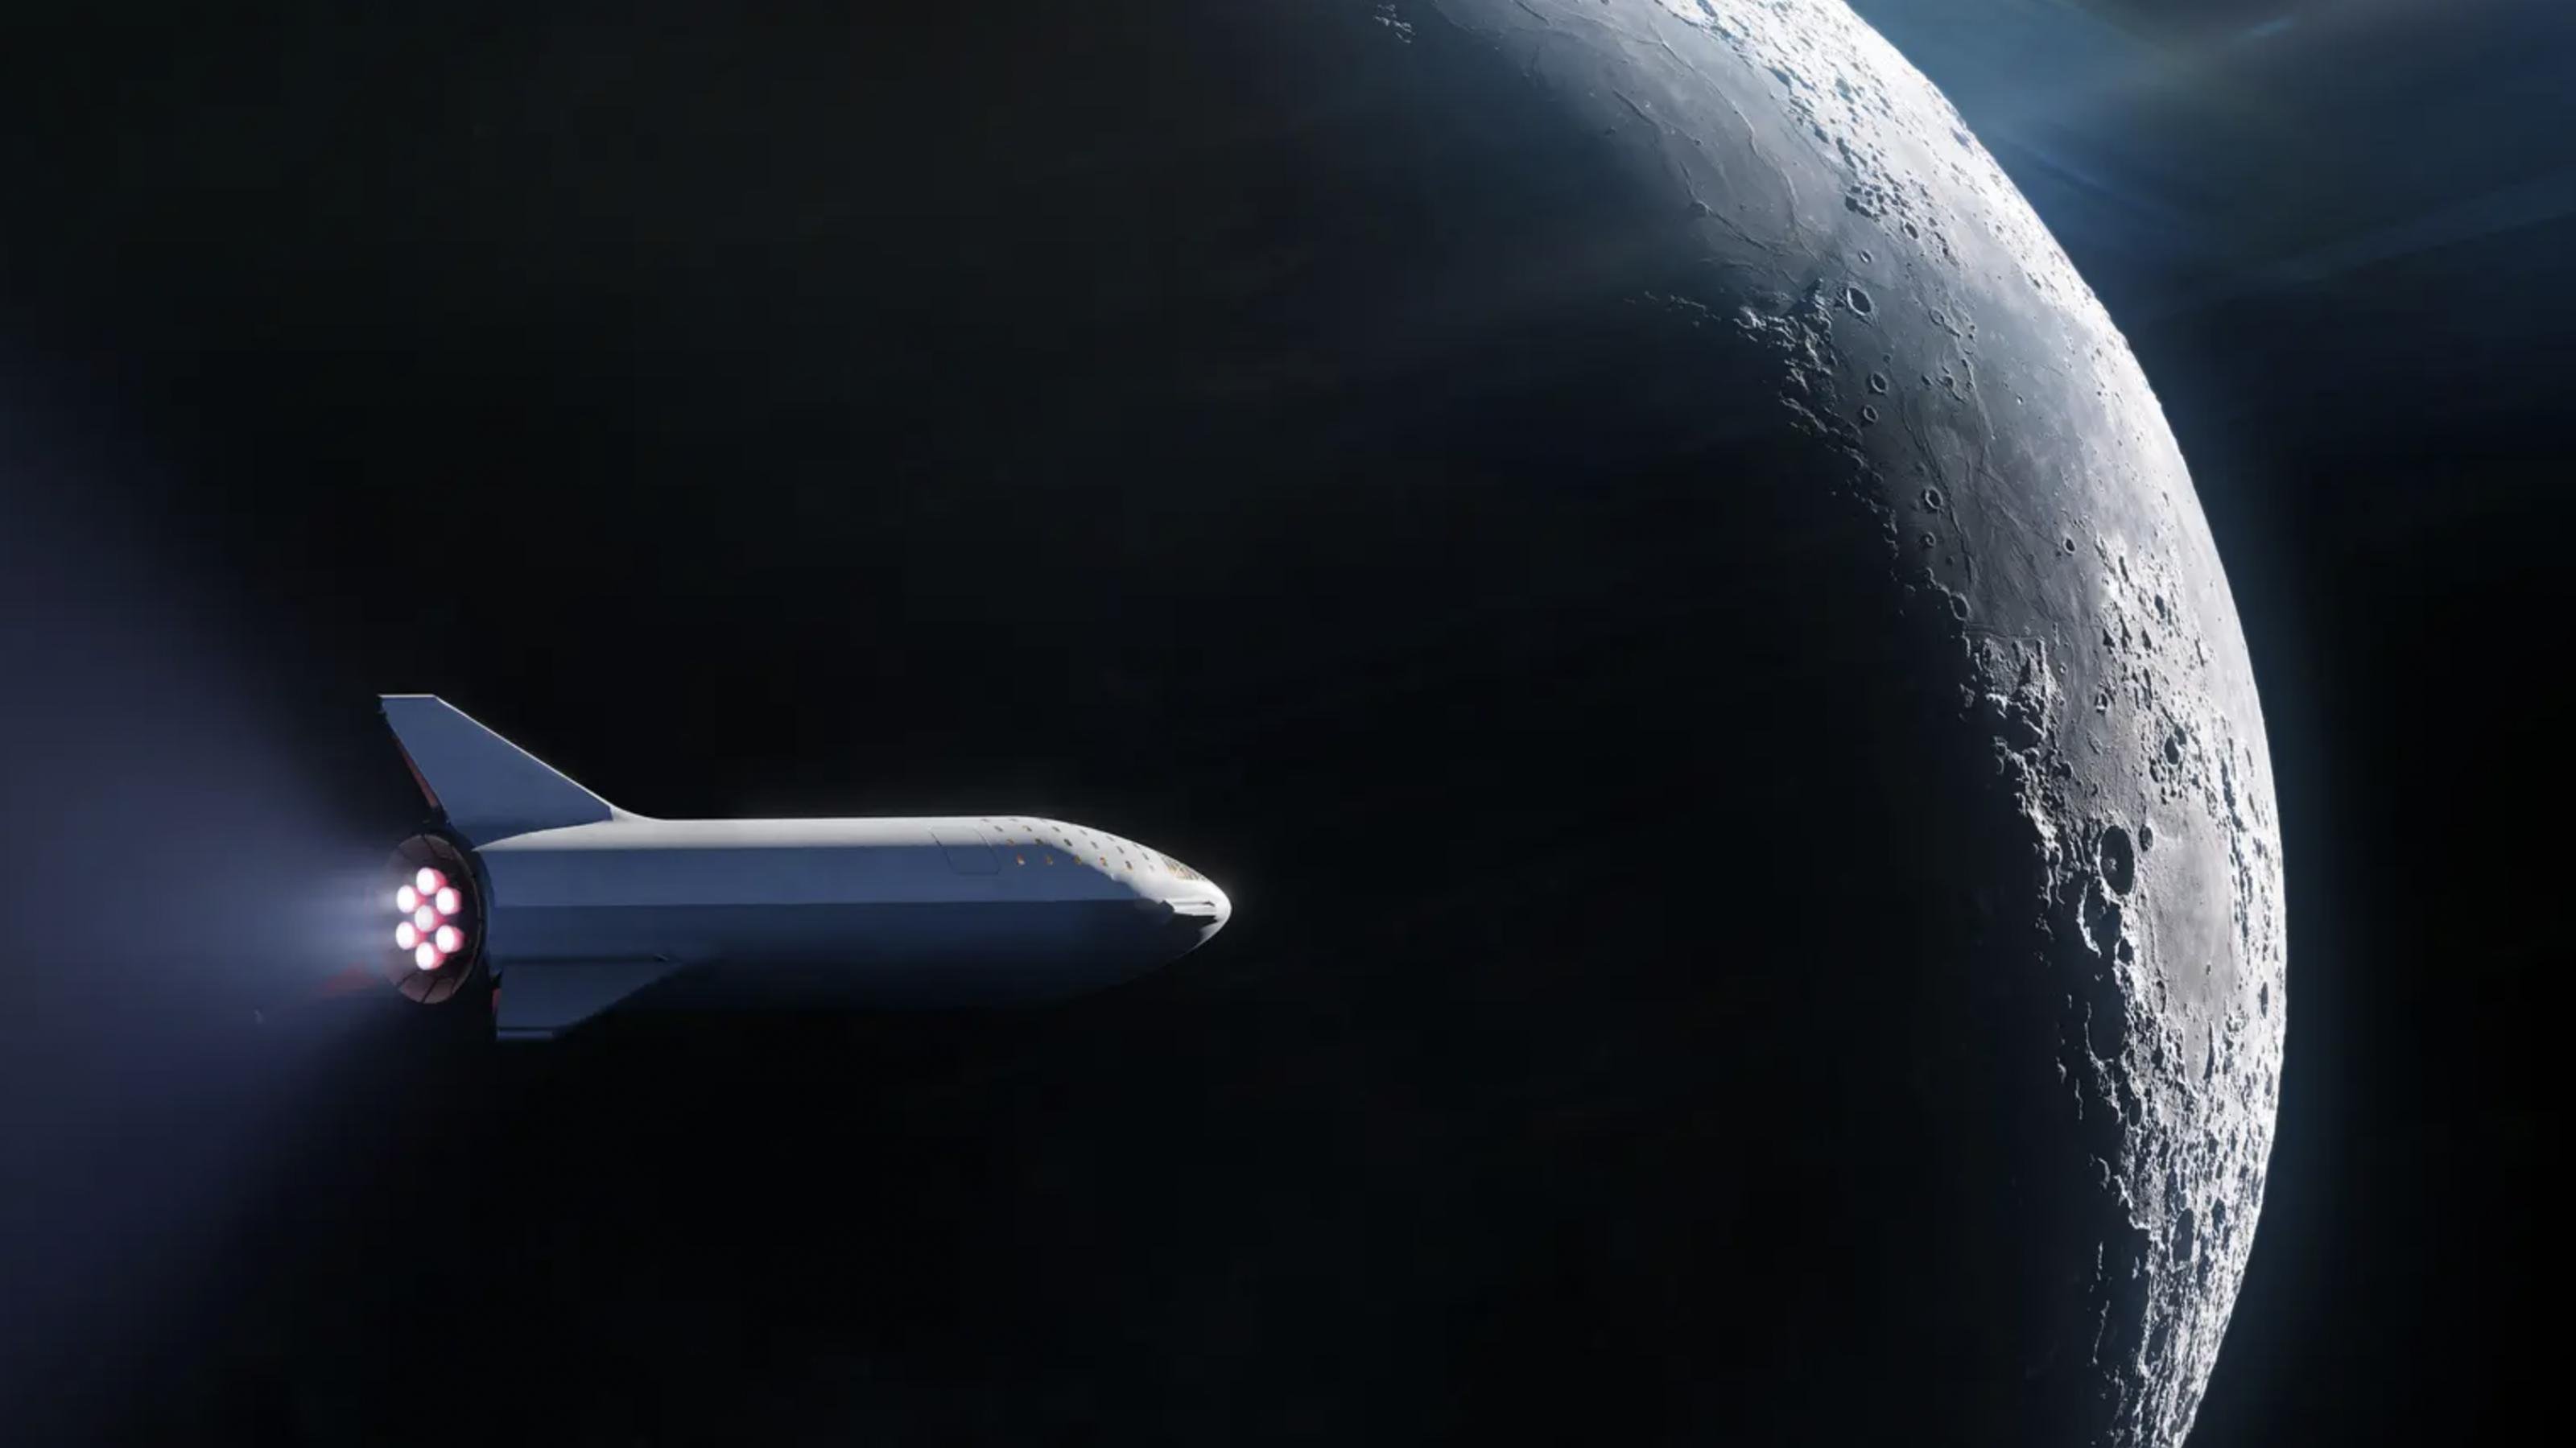 Eine Illustration des Starship-Raumschiffes vom privaten Raumfahrtunternehmen SpaceX am Mond. Das Raumschiff befindet sich in der Bildmitte, ein Ausschnitt des Mondes im Bildhintergrund